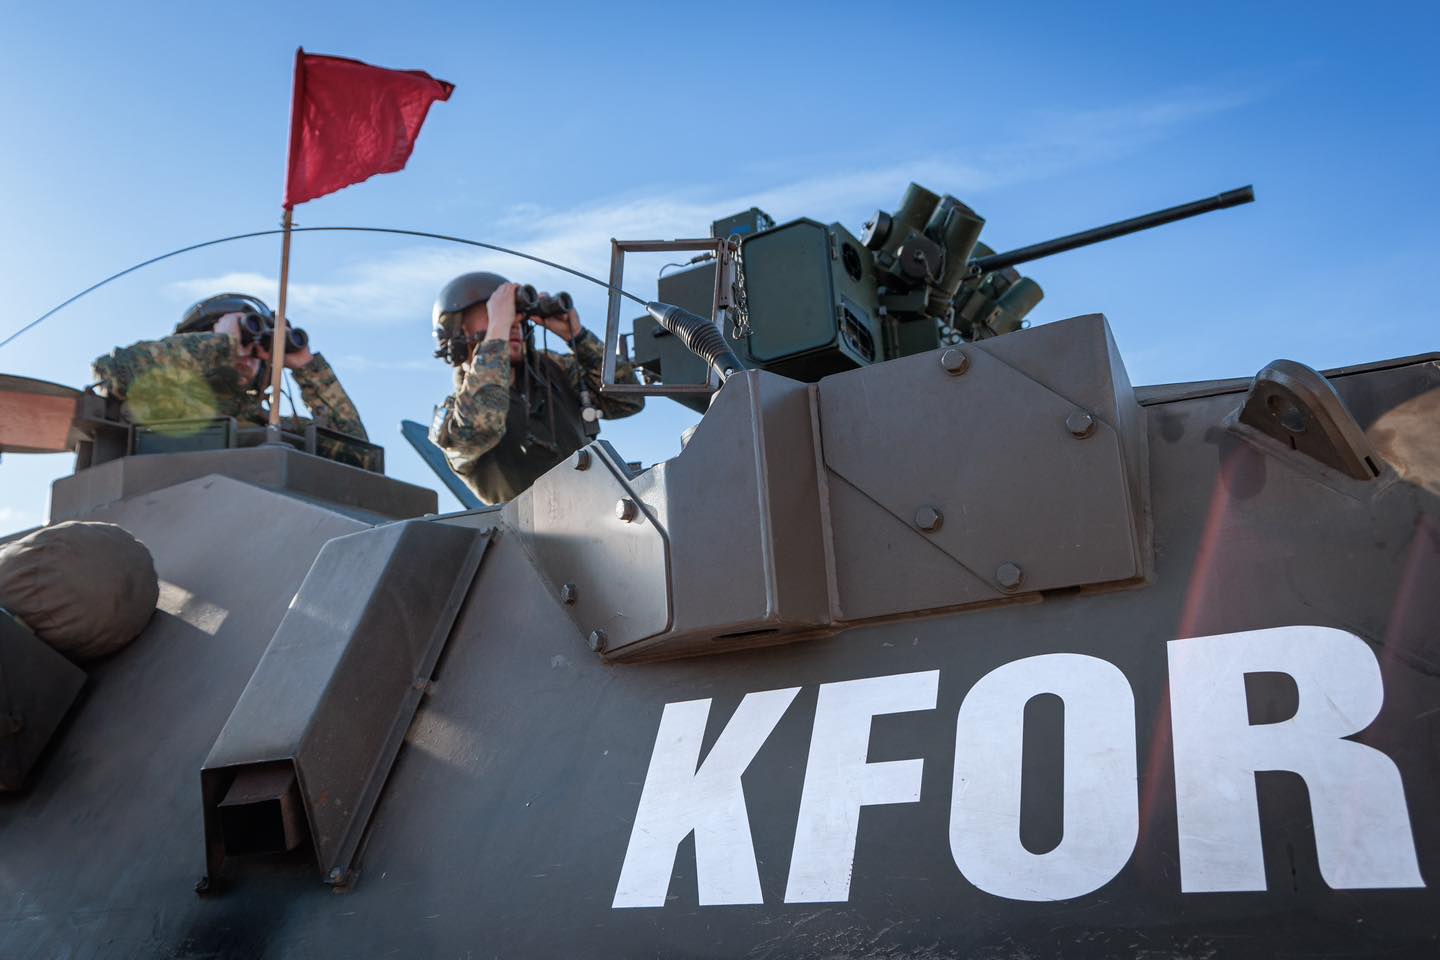 Komandanti i KFOR-it thotë se NATO është e vendosur për sigurinë në Kosovë: Qëndrojmë për aq sa është e nevojshme